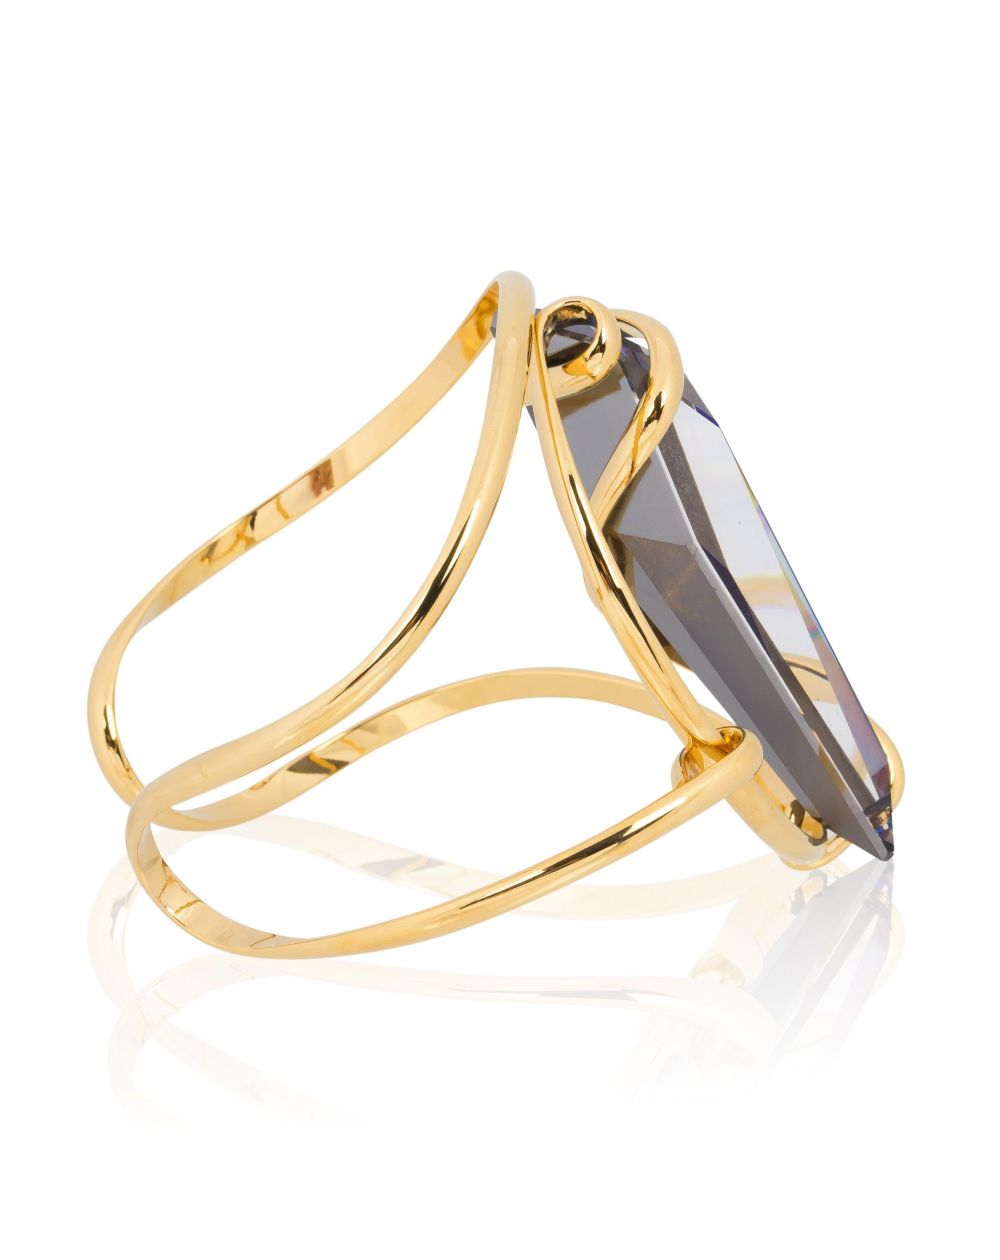 Andrea Marazzini bijoux - Bracelet cristal Swarovski Stalattite Bermuda Blue BR1